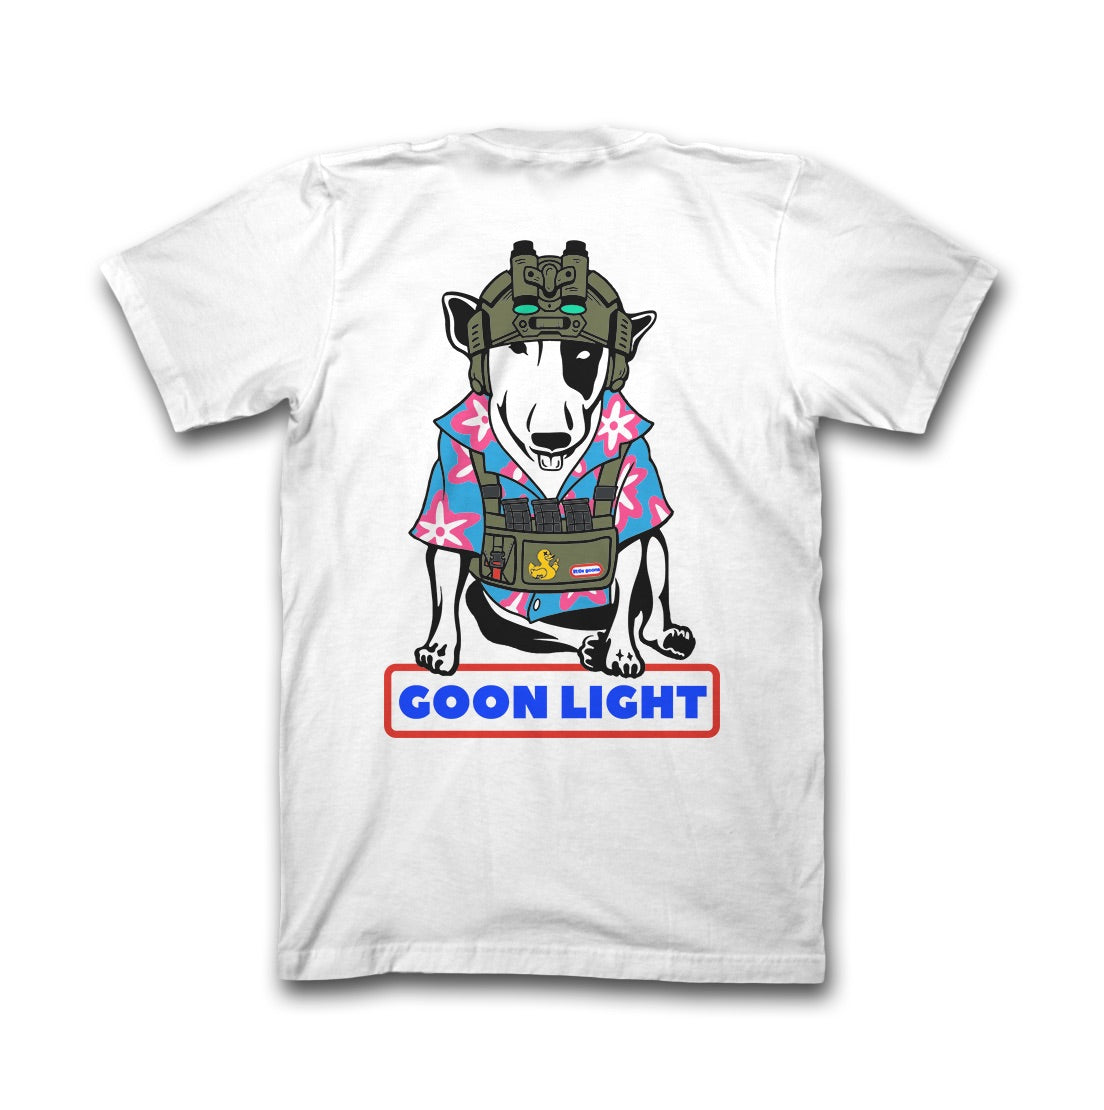 Dangerous Goods® Goon Light “Party Animal” T-Shirt : WHITE